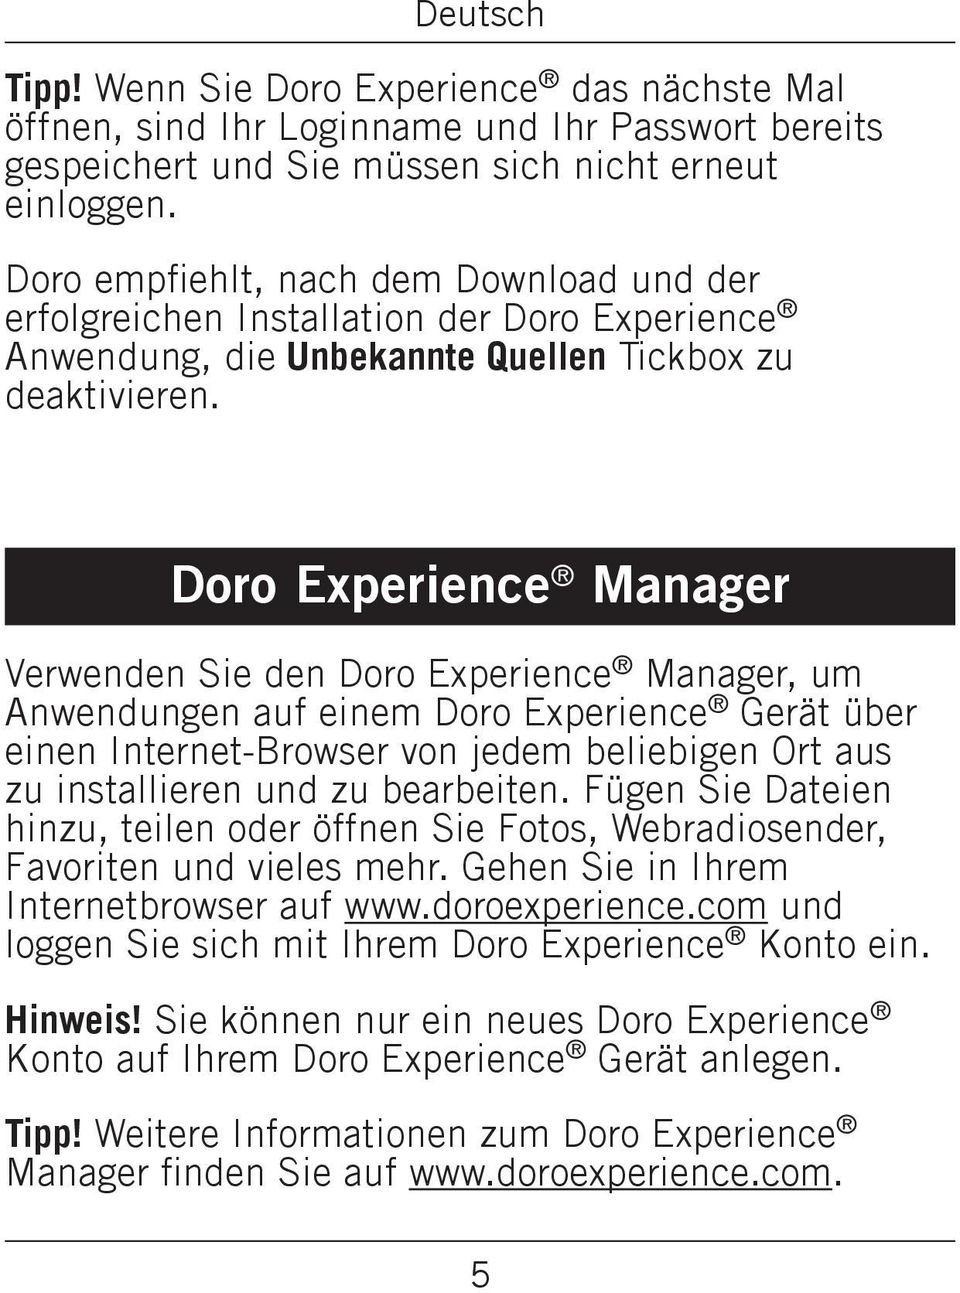 Doro Experience Manager Verwenden Sie den Doro Experience Manager, um Anwendungen auf einem Doro Experience Gerät über einen Internet-Browser von jedem beliebigen Ort aus zu installieren und zu